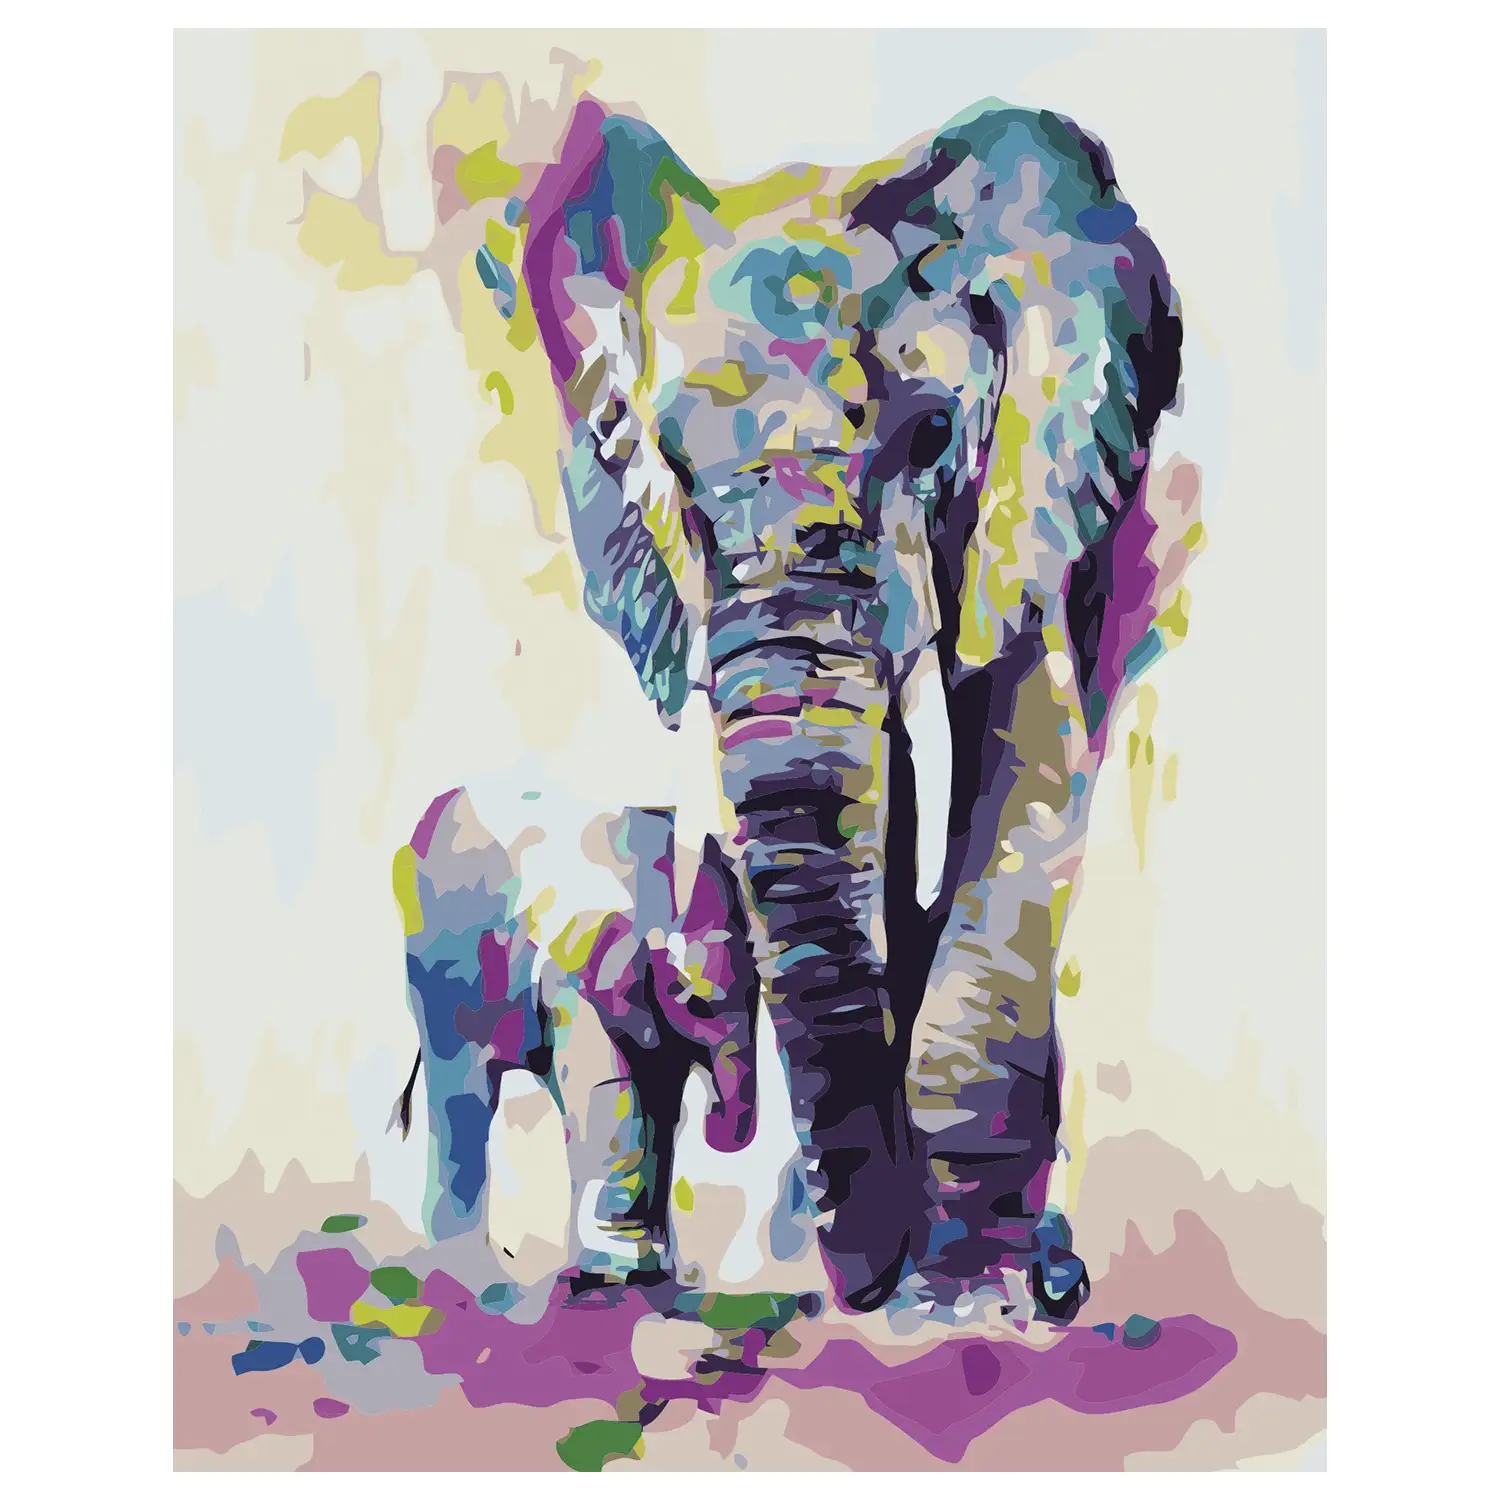 Lienzo con dibujo para pintar con números, de 40x50cm. Diseño elefantes coloridos. Incluye pinceles y pinturas necesarias.